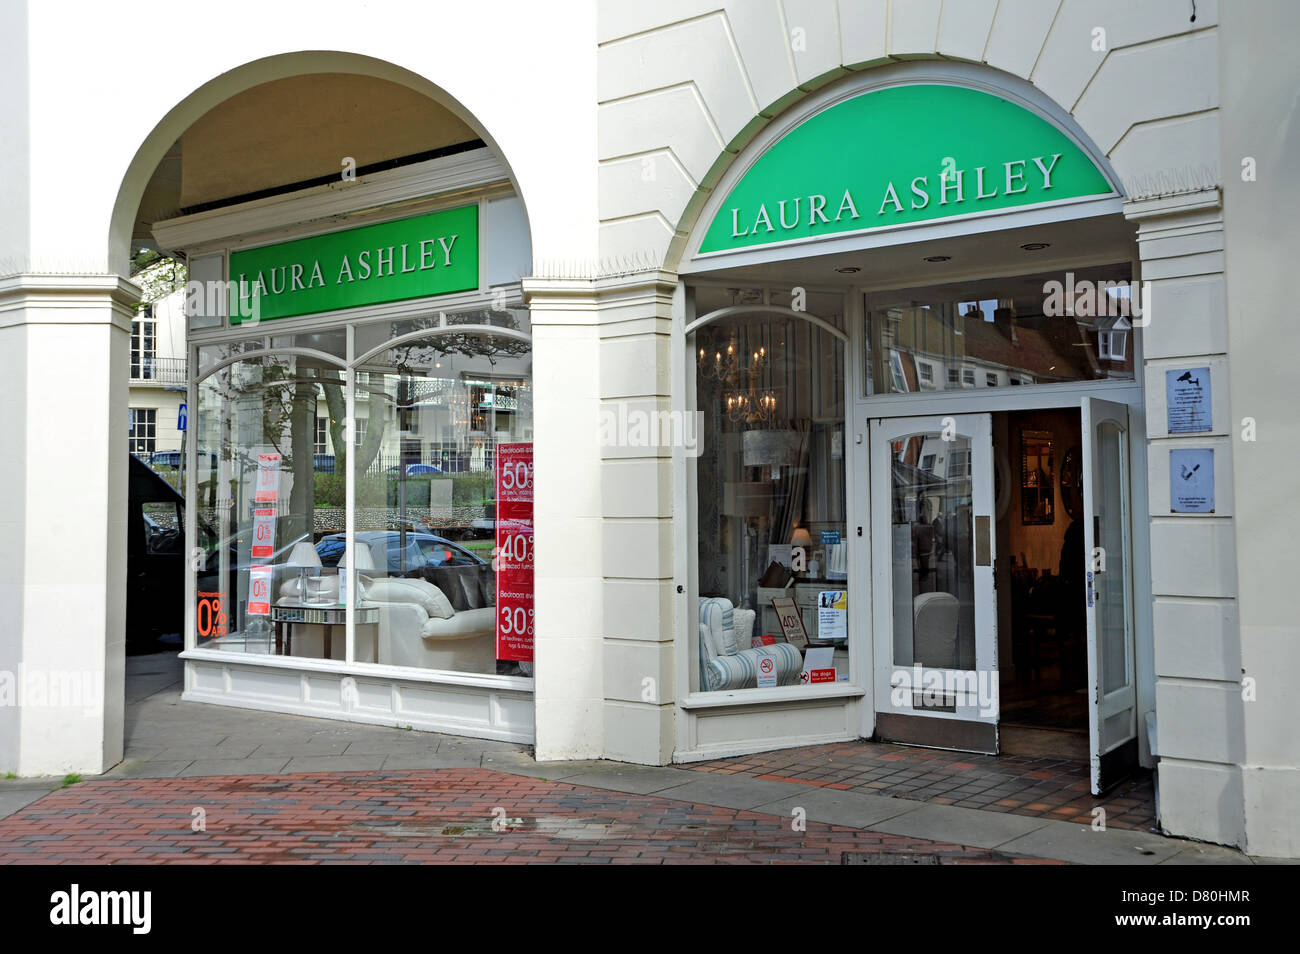 Laura Ashley-Shop-Eingang Worthing UK Stockfoto